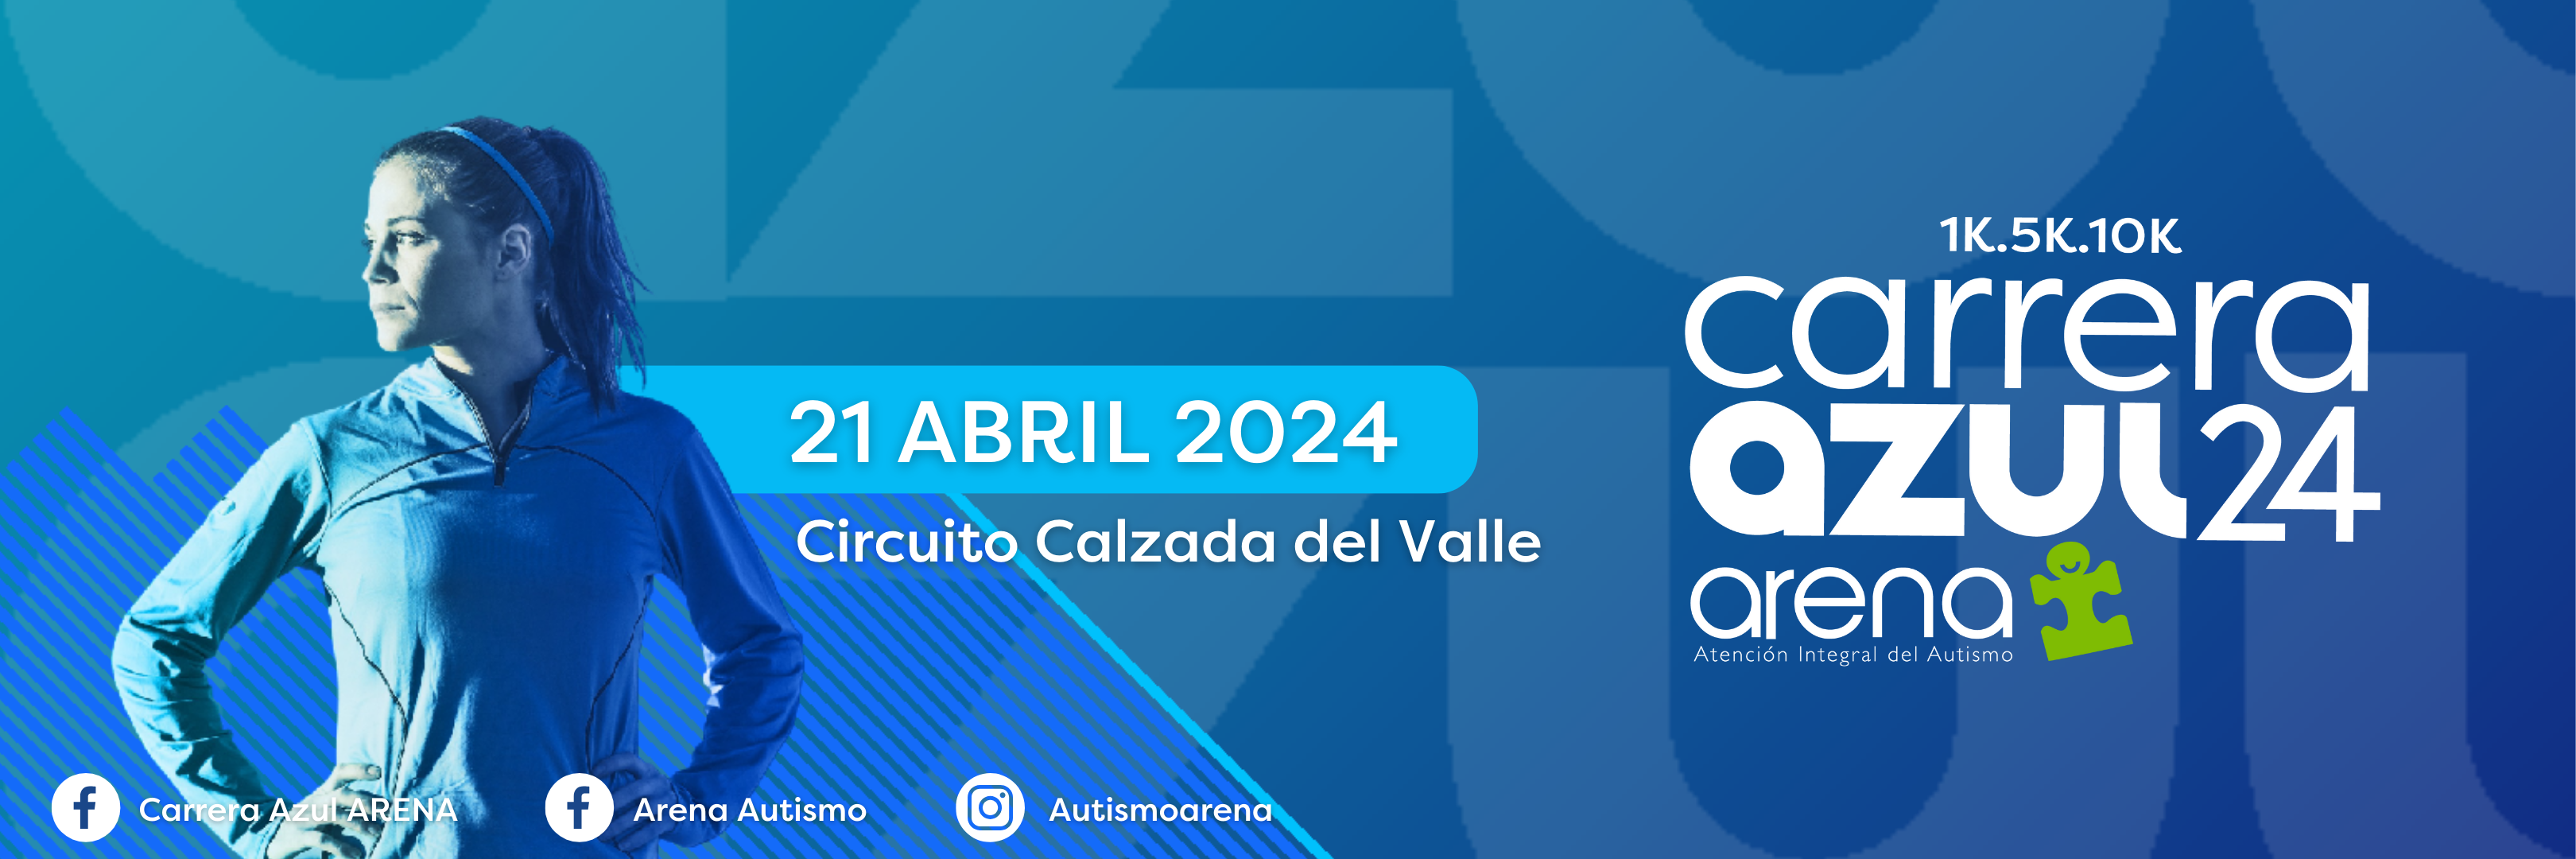 Carrera Azul ARENA 2024